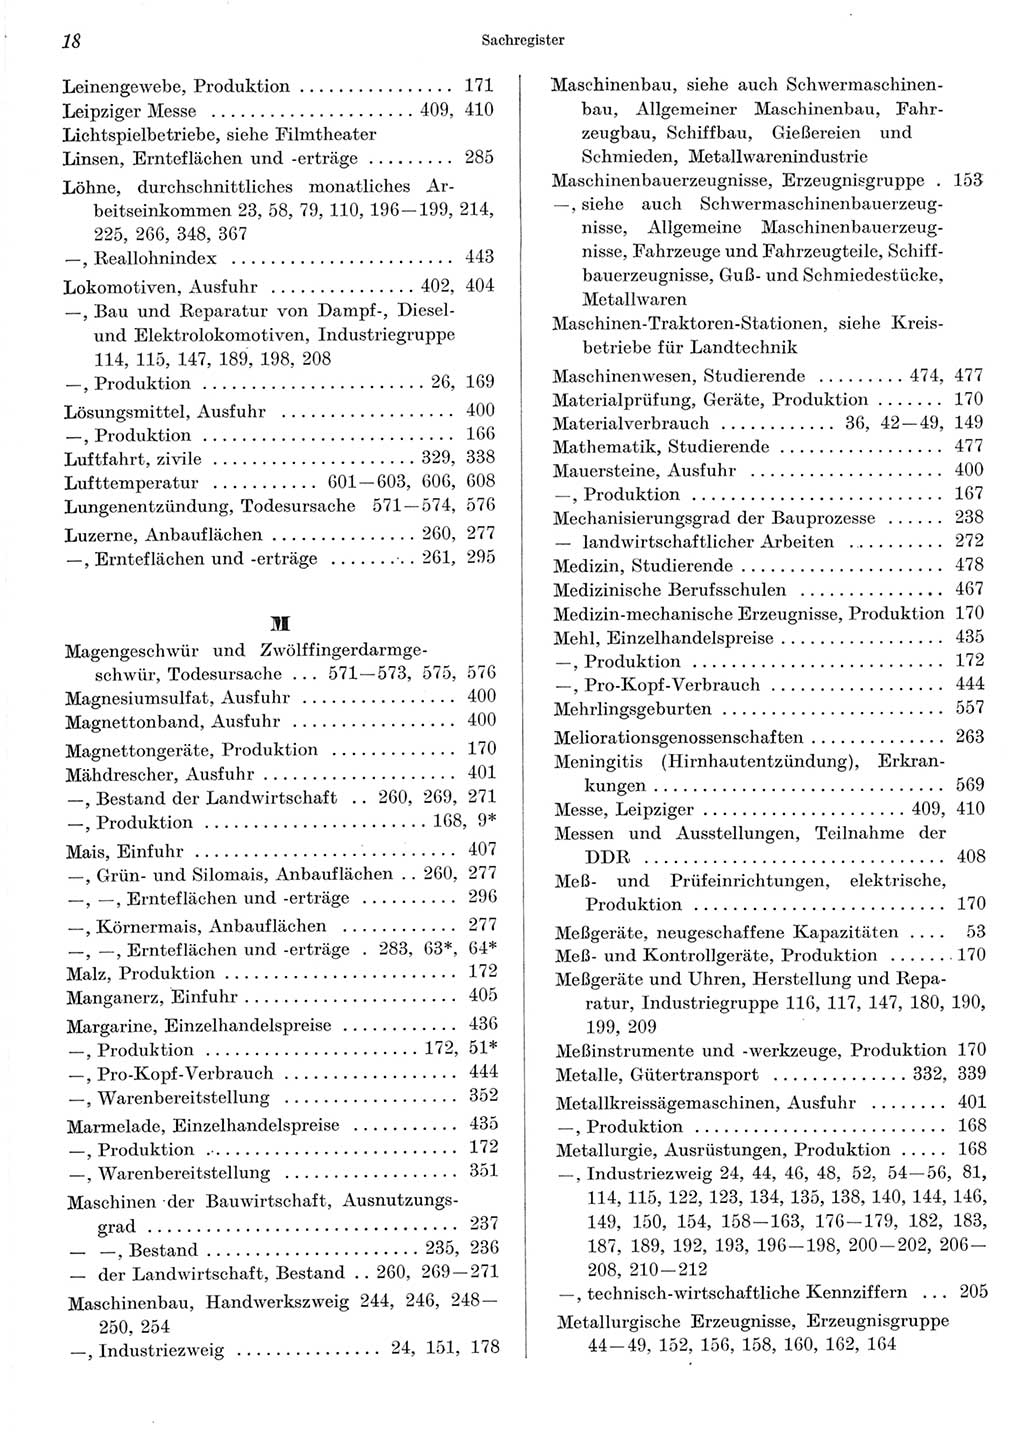 Statistisches Jahrbuch der Deutschen Demokratischen Republik (DDR) 1967, Seite 18 (Stat. Jb. DDR 1967, S. 18)